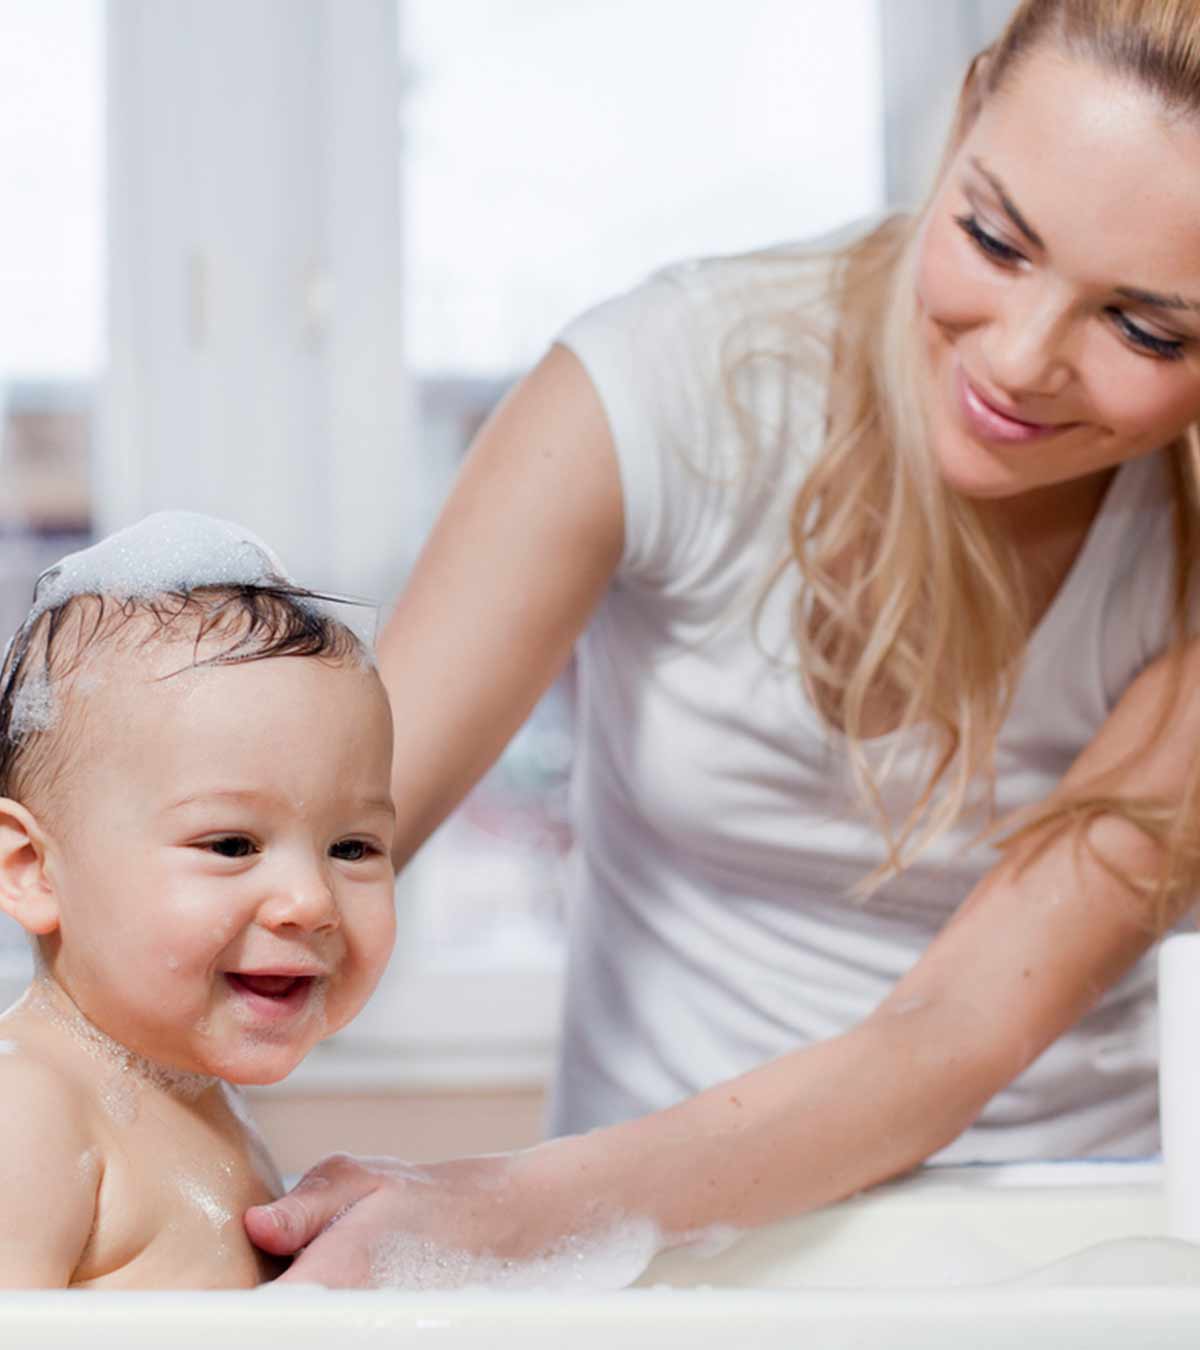 婴儿泻盐浴:安全性、益处和注意事项